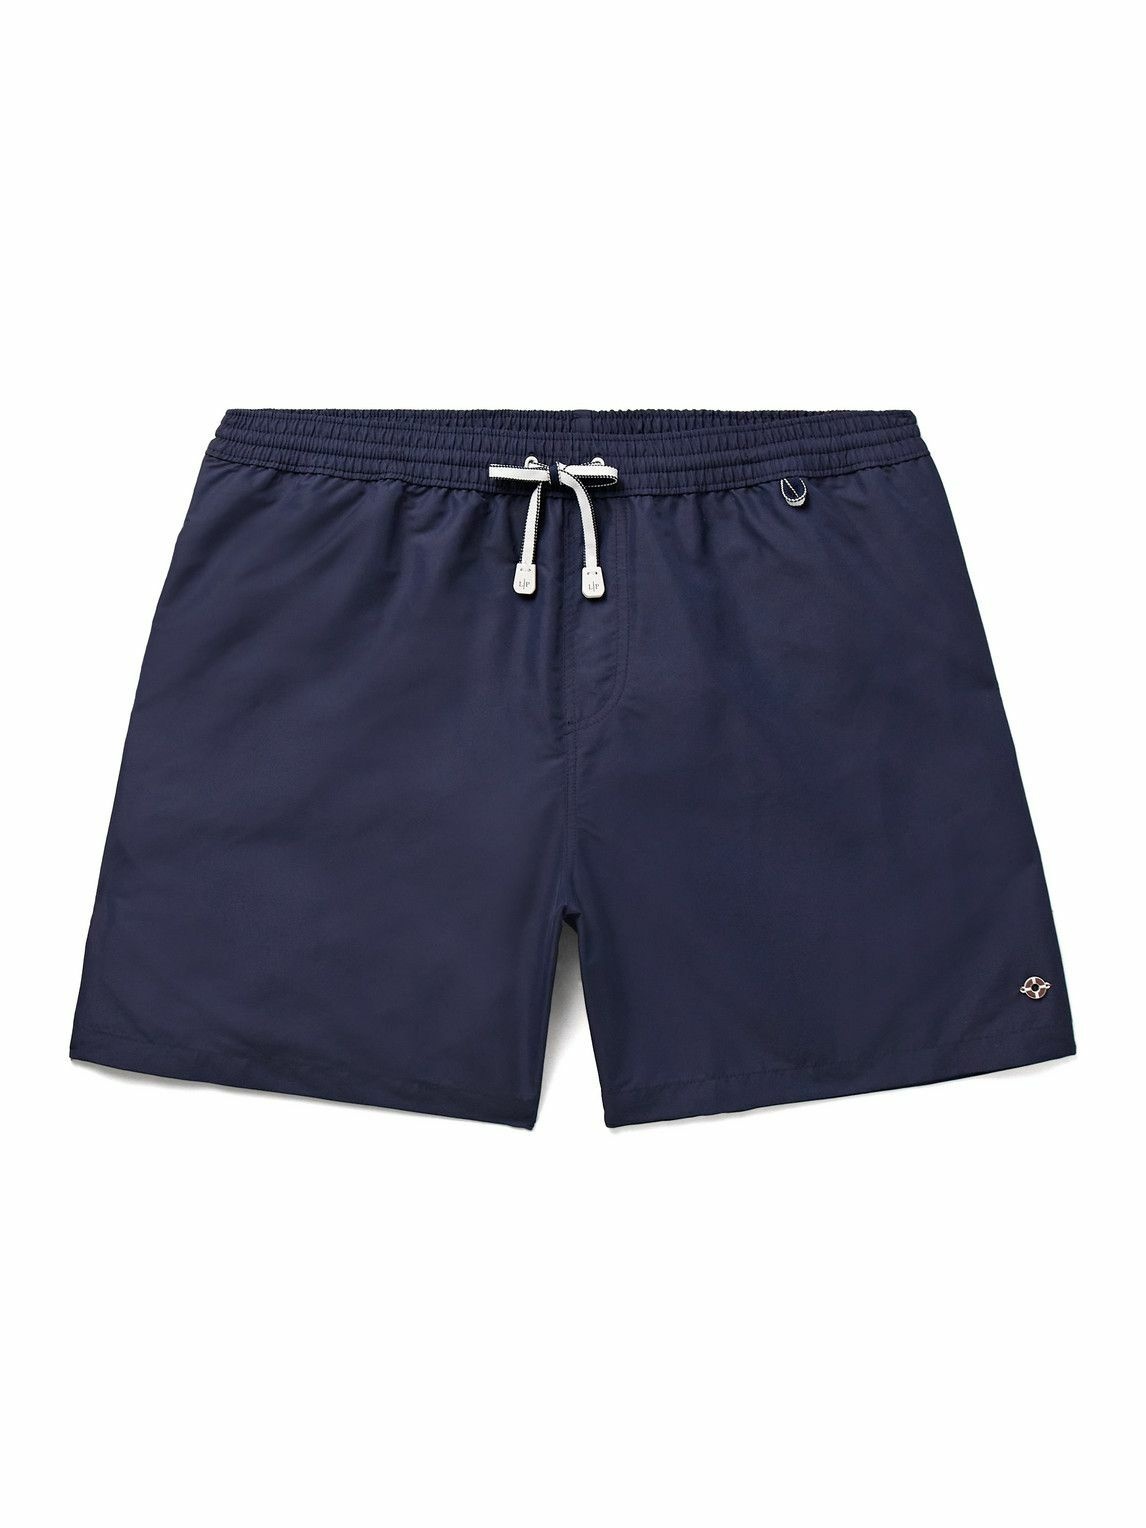 Photo: Loro Piana - Bay Straight-Leg Mid-Length Swim Shorts - Blue